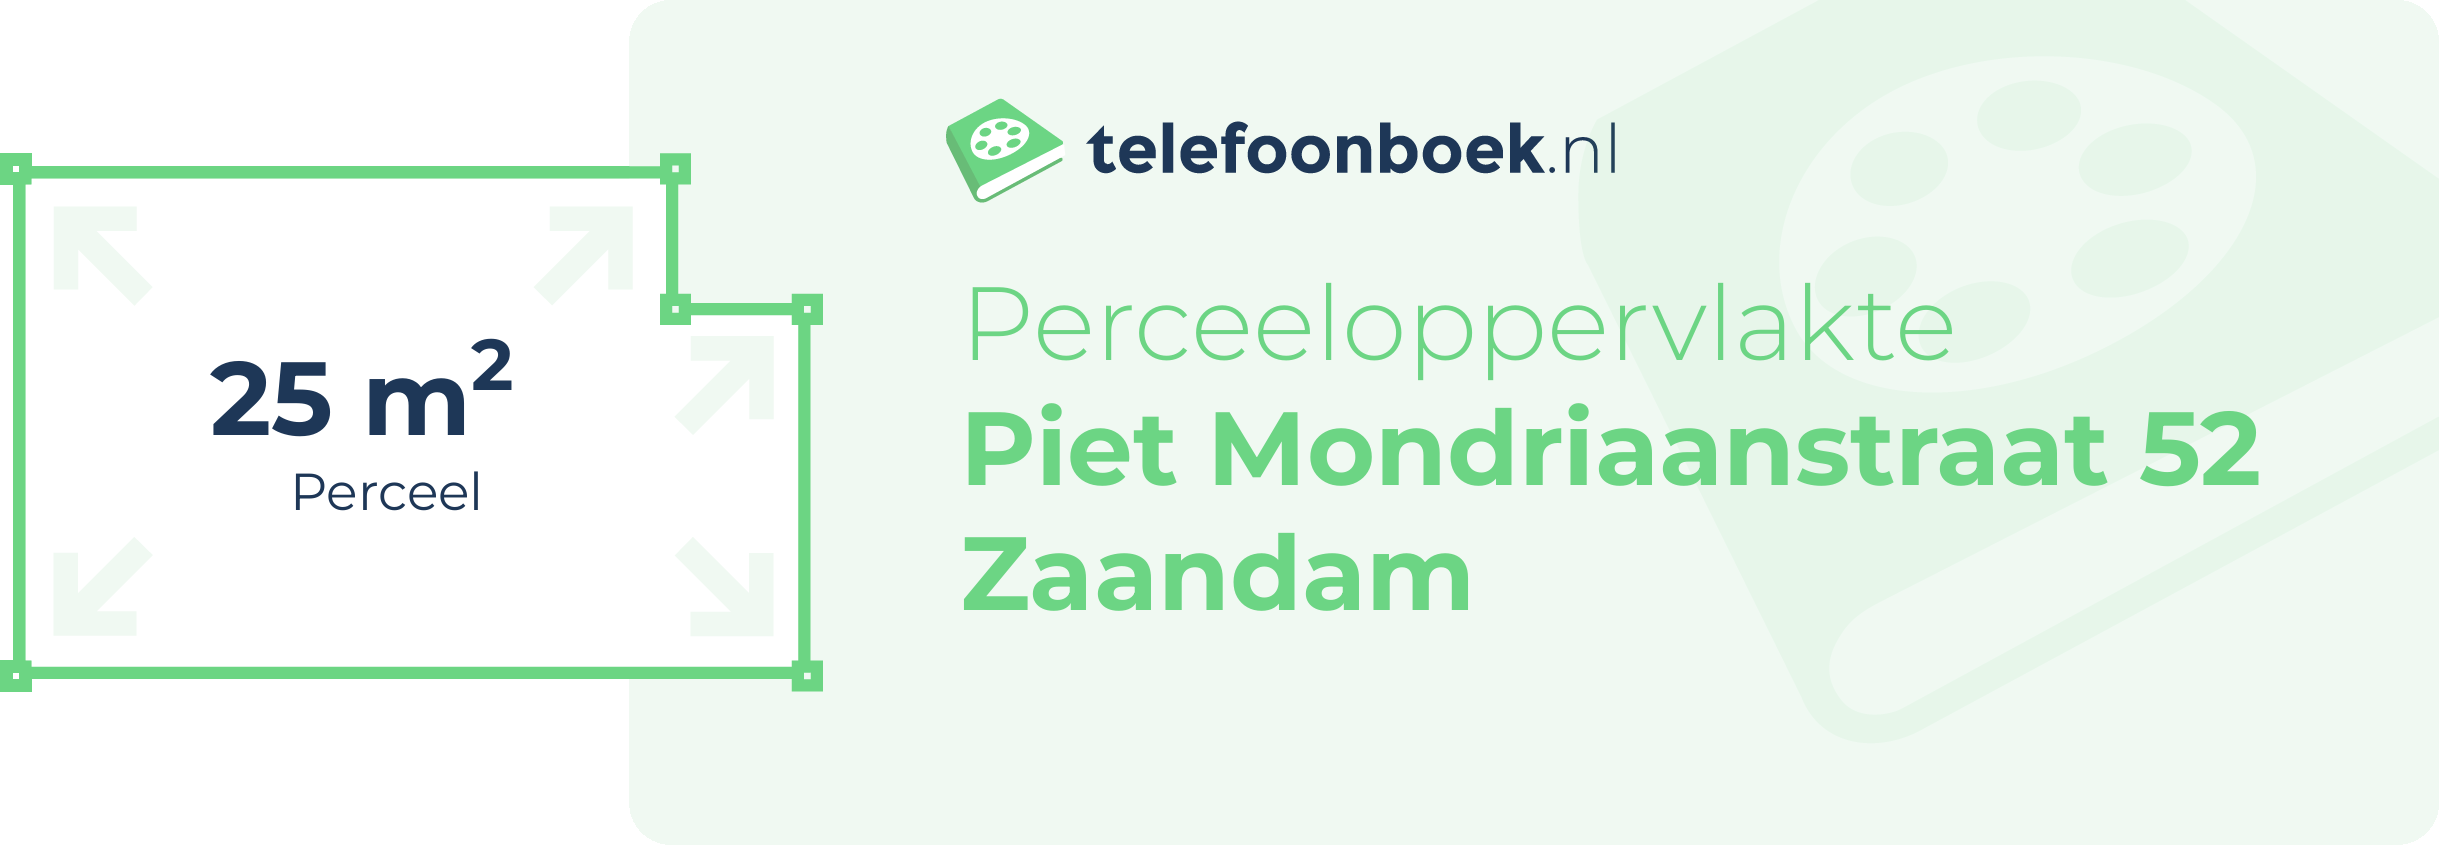 Perceeloppervlakte Piet Mondriaanstraat 52 Zaandam